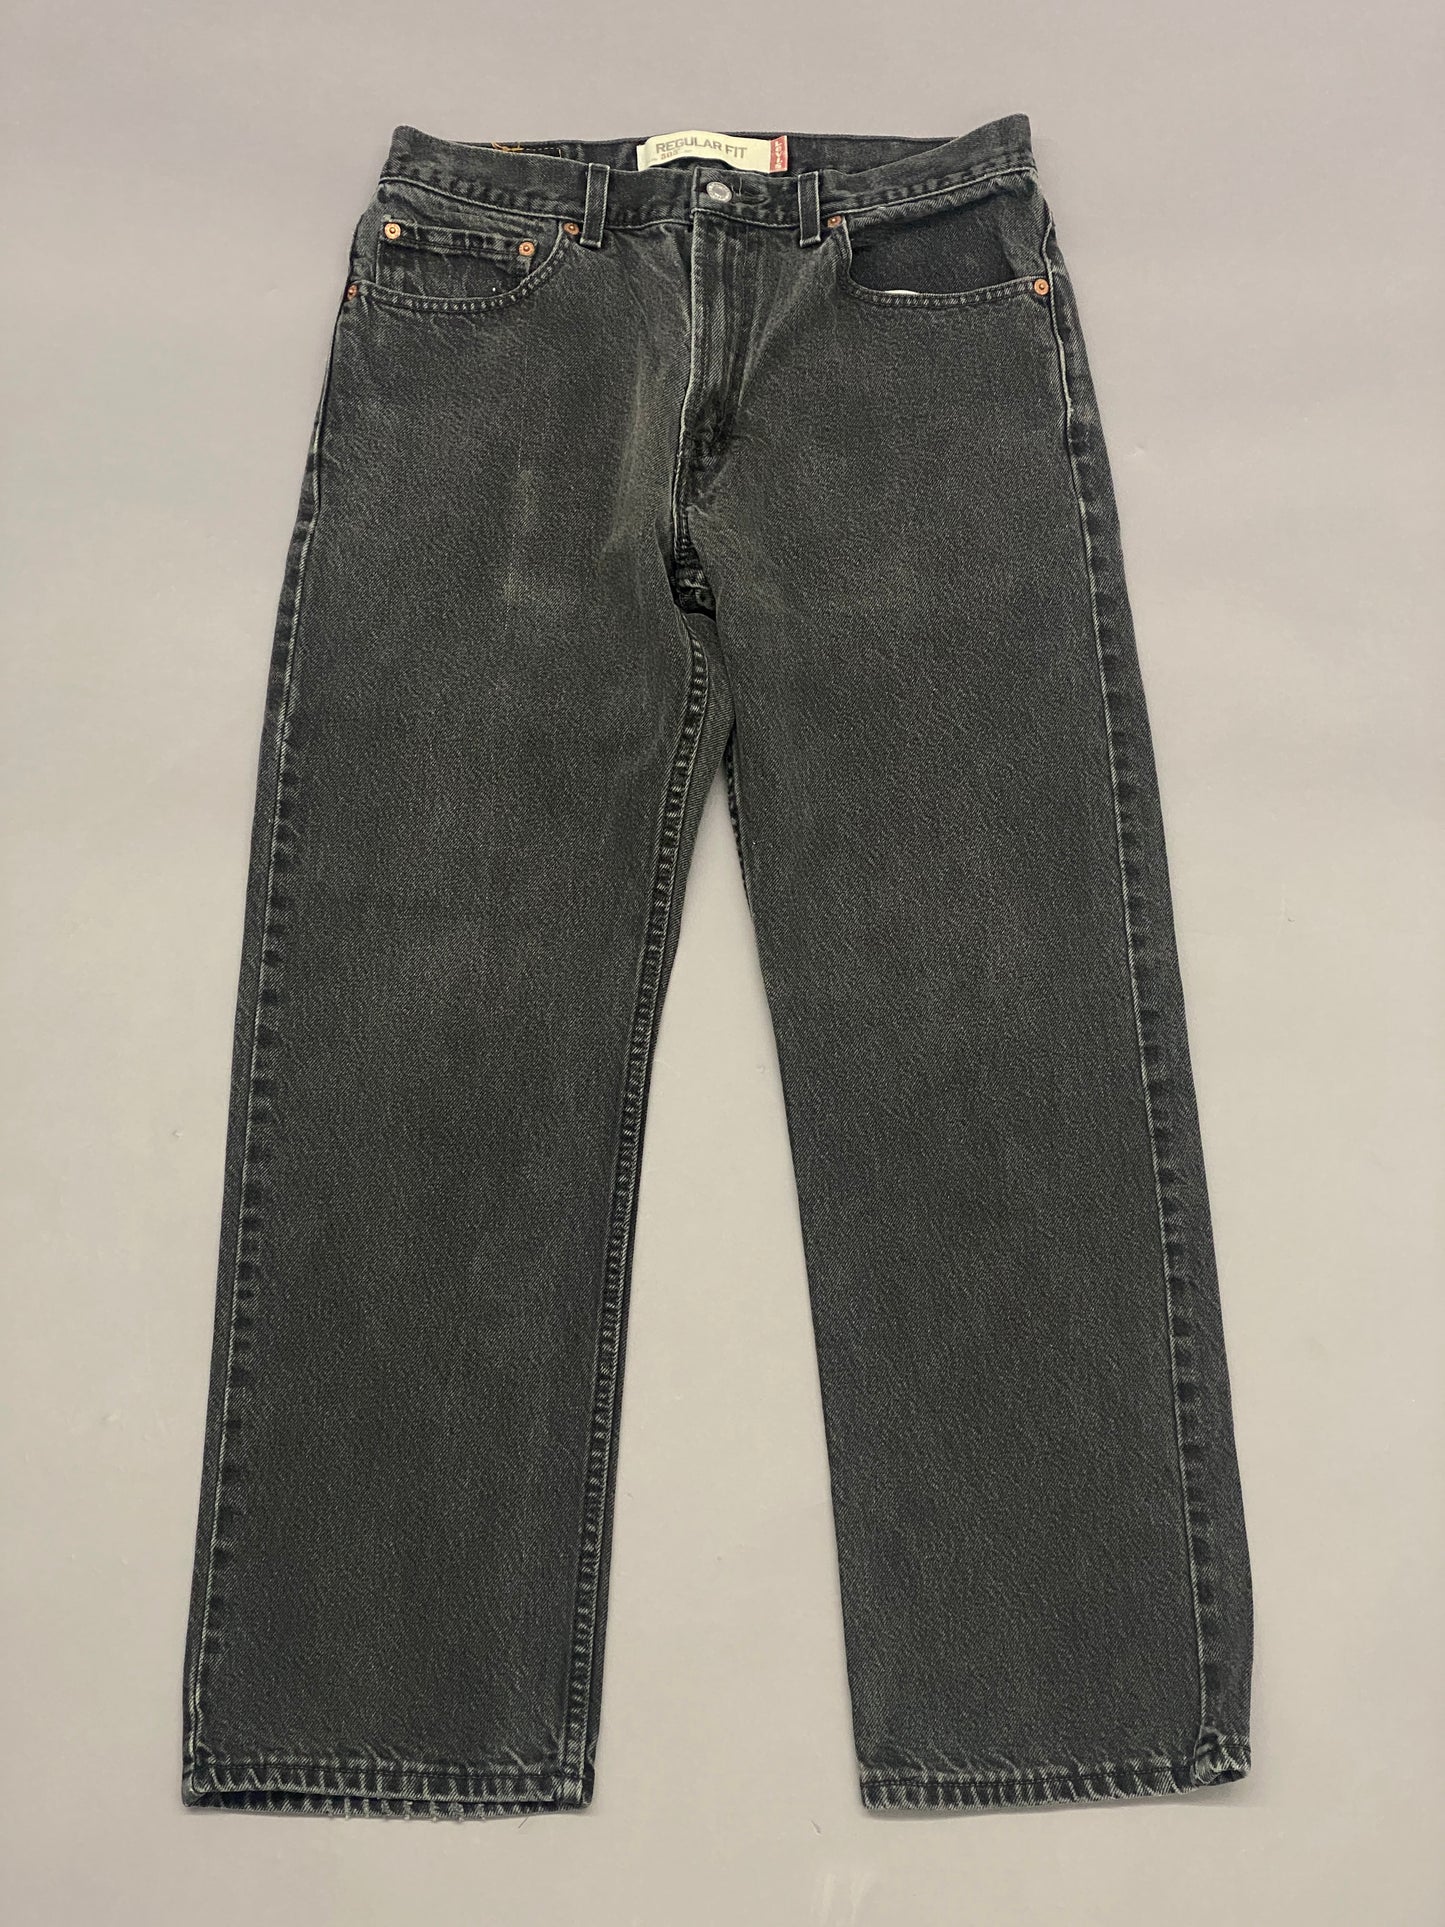 Levis 505 Jeans - 33x30